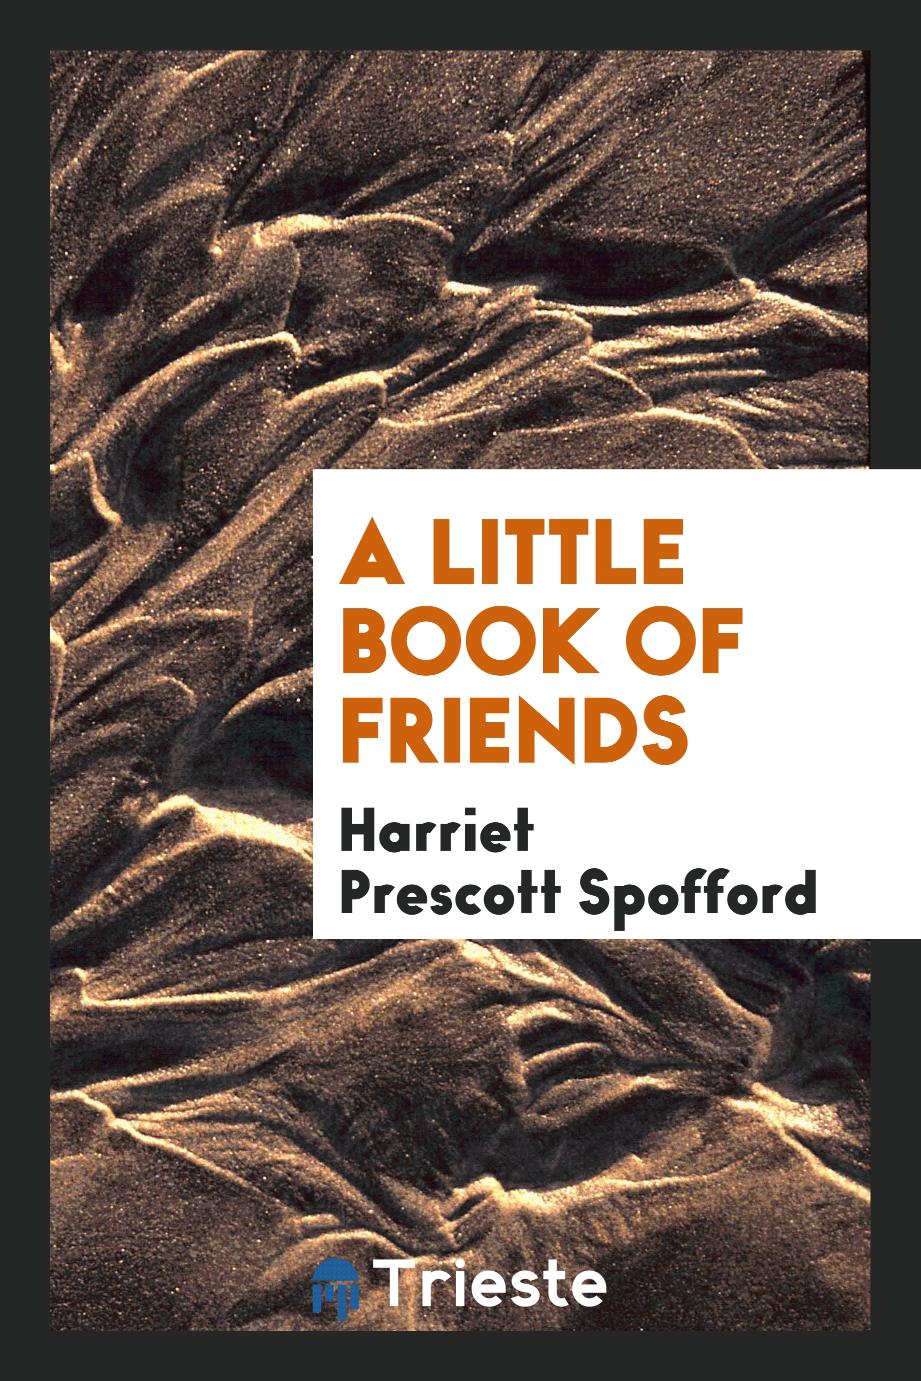 A little book of friends